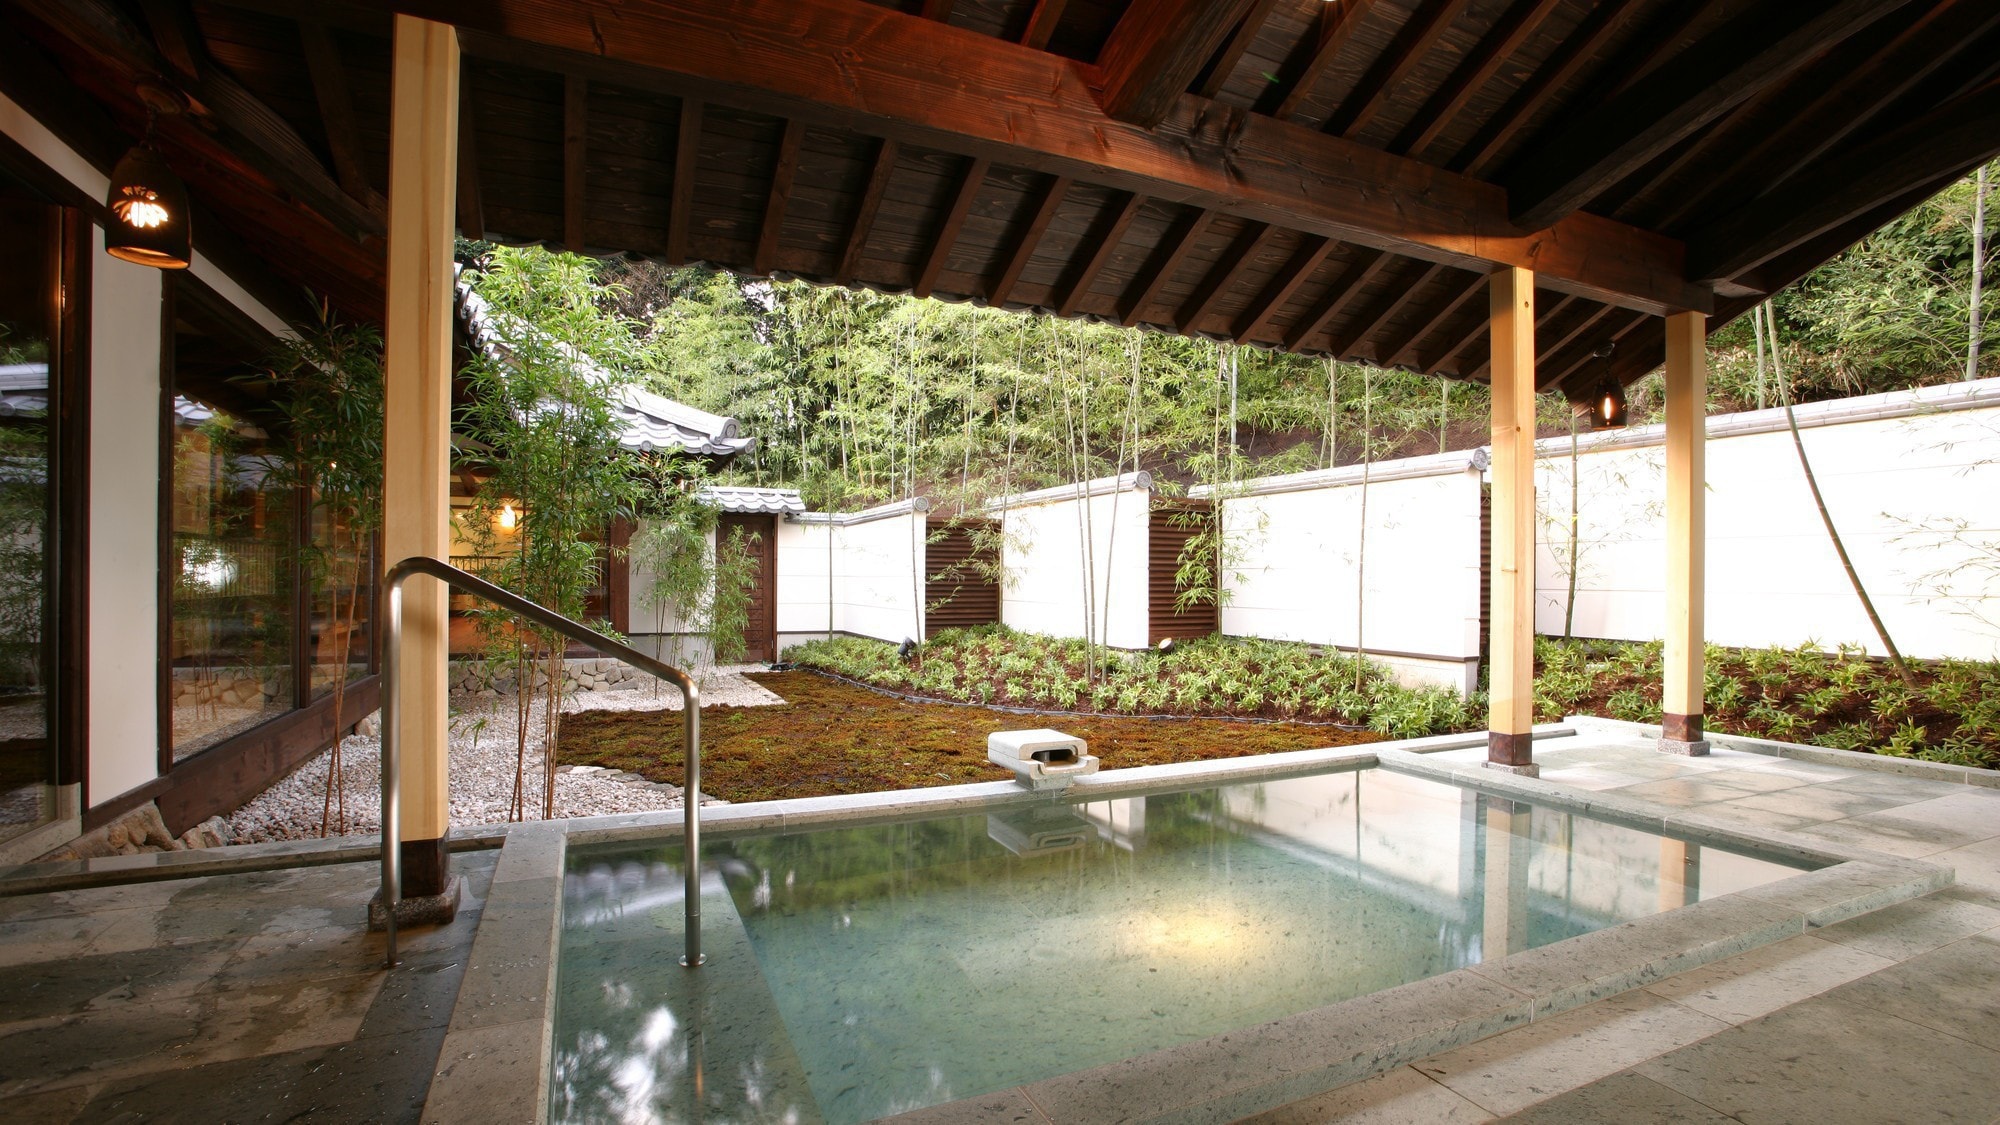 Yukura open-air bath